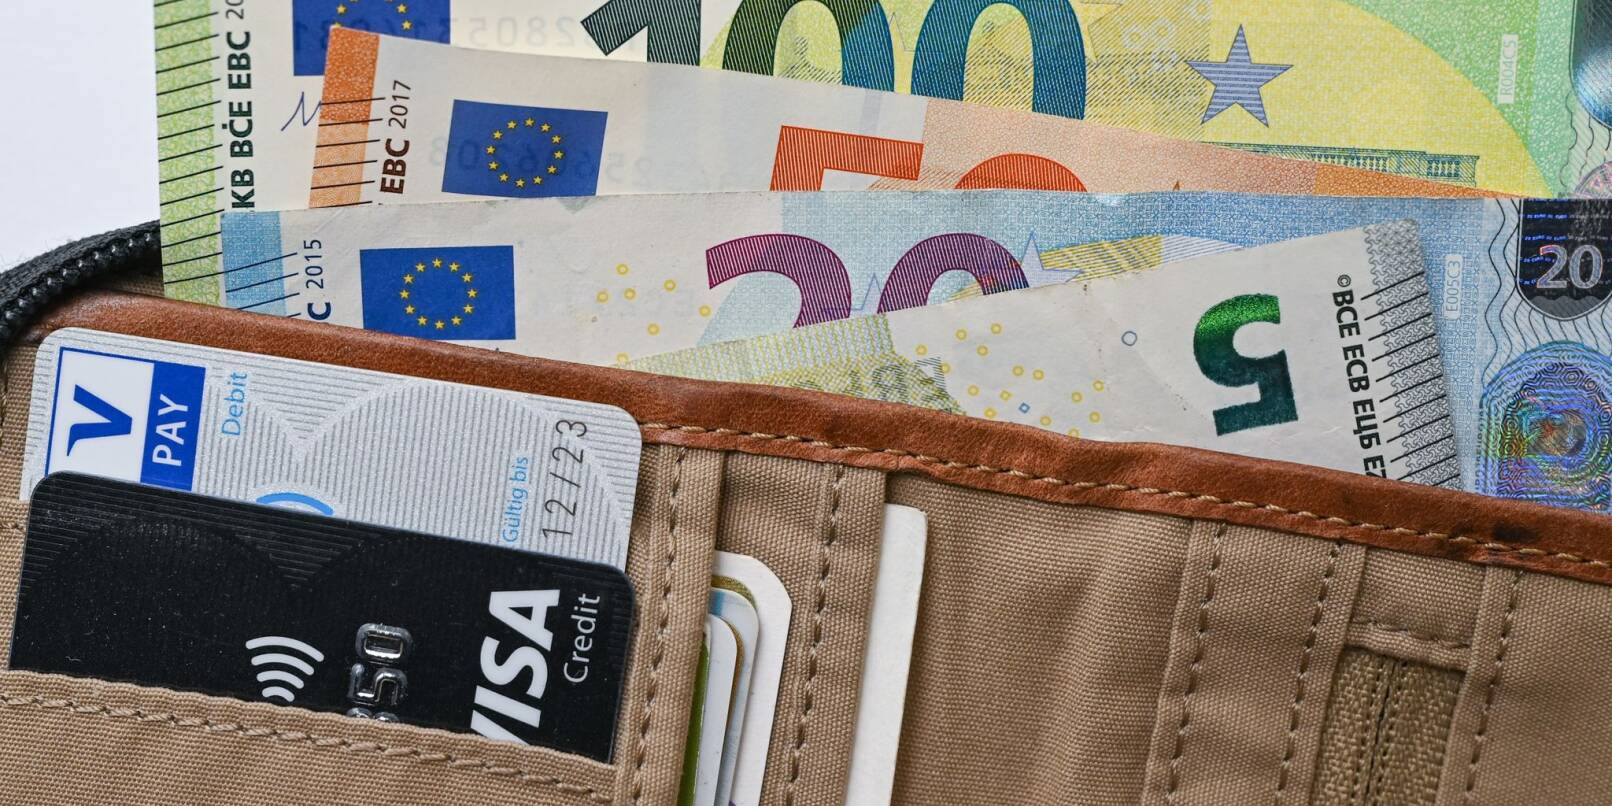 Viele Eurobanknoten stecken in einer Geldbörse.